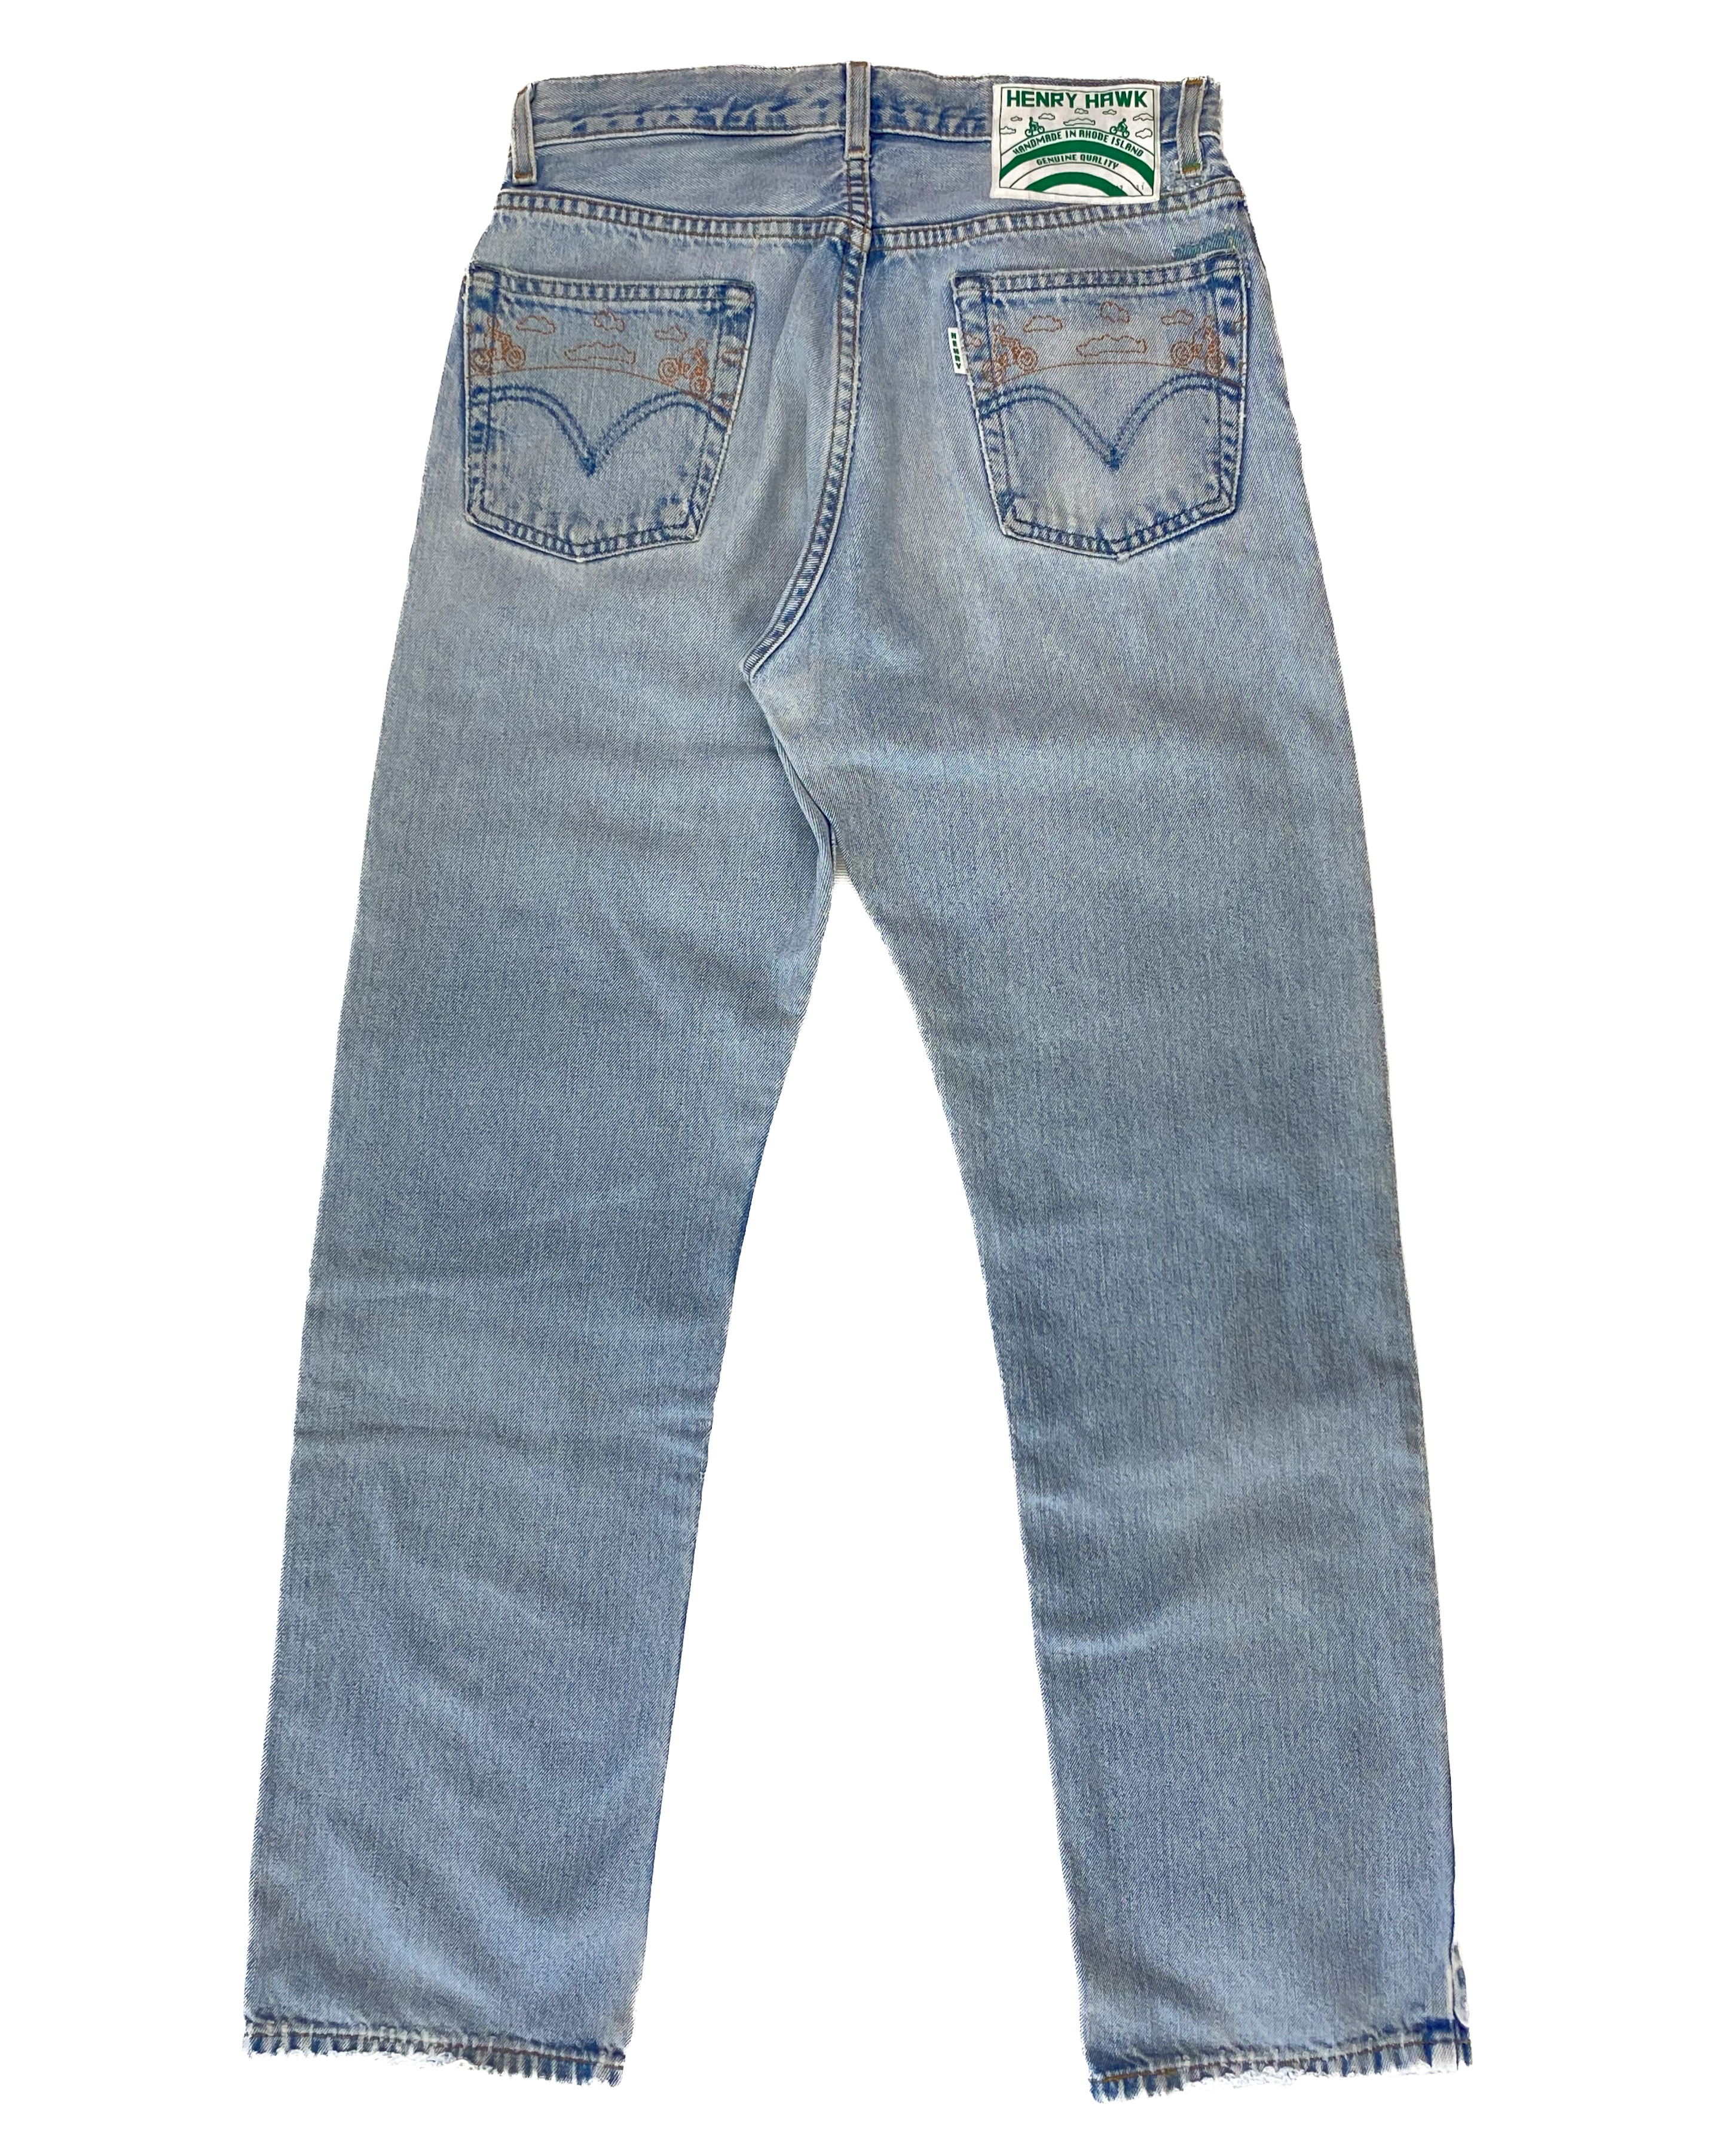 Refurbished jeans SHOP - Henry Hawk